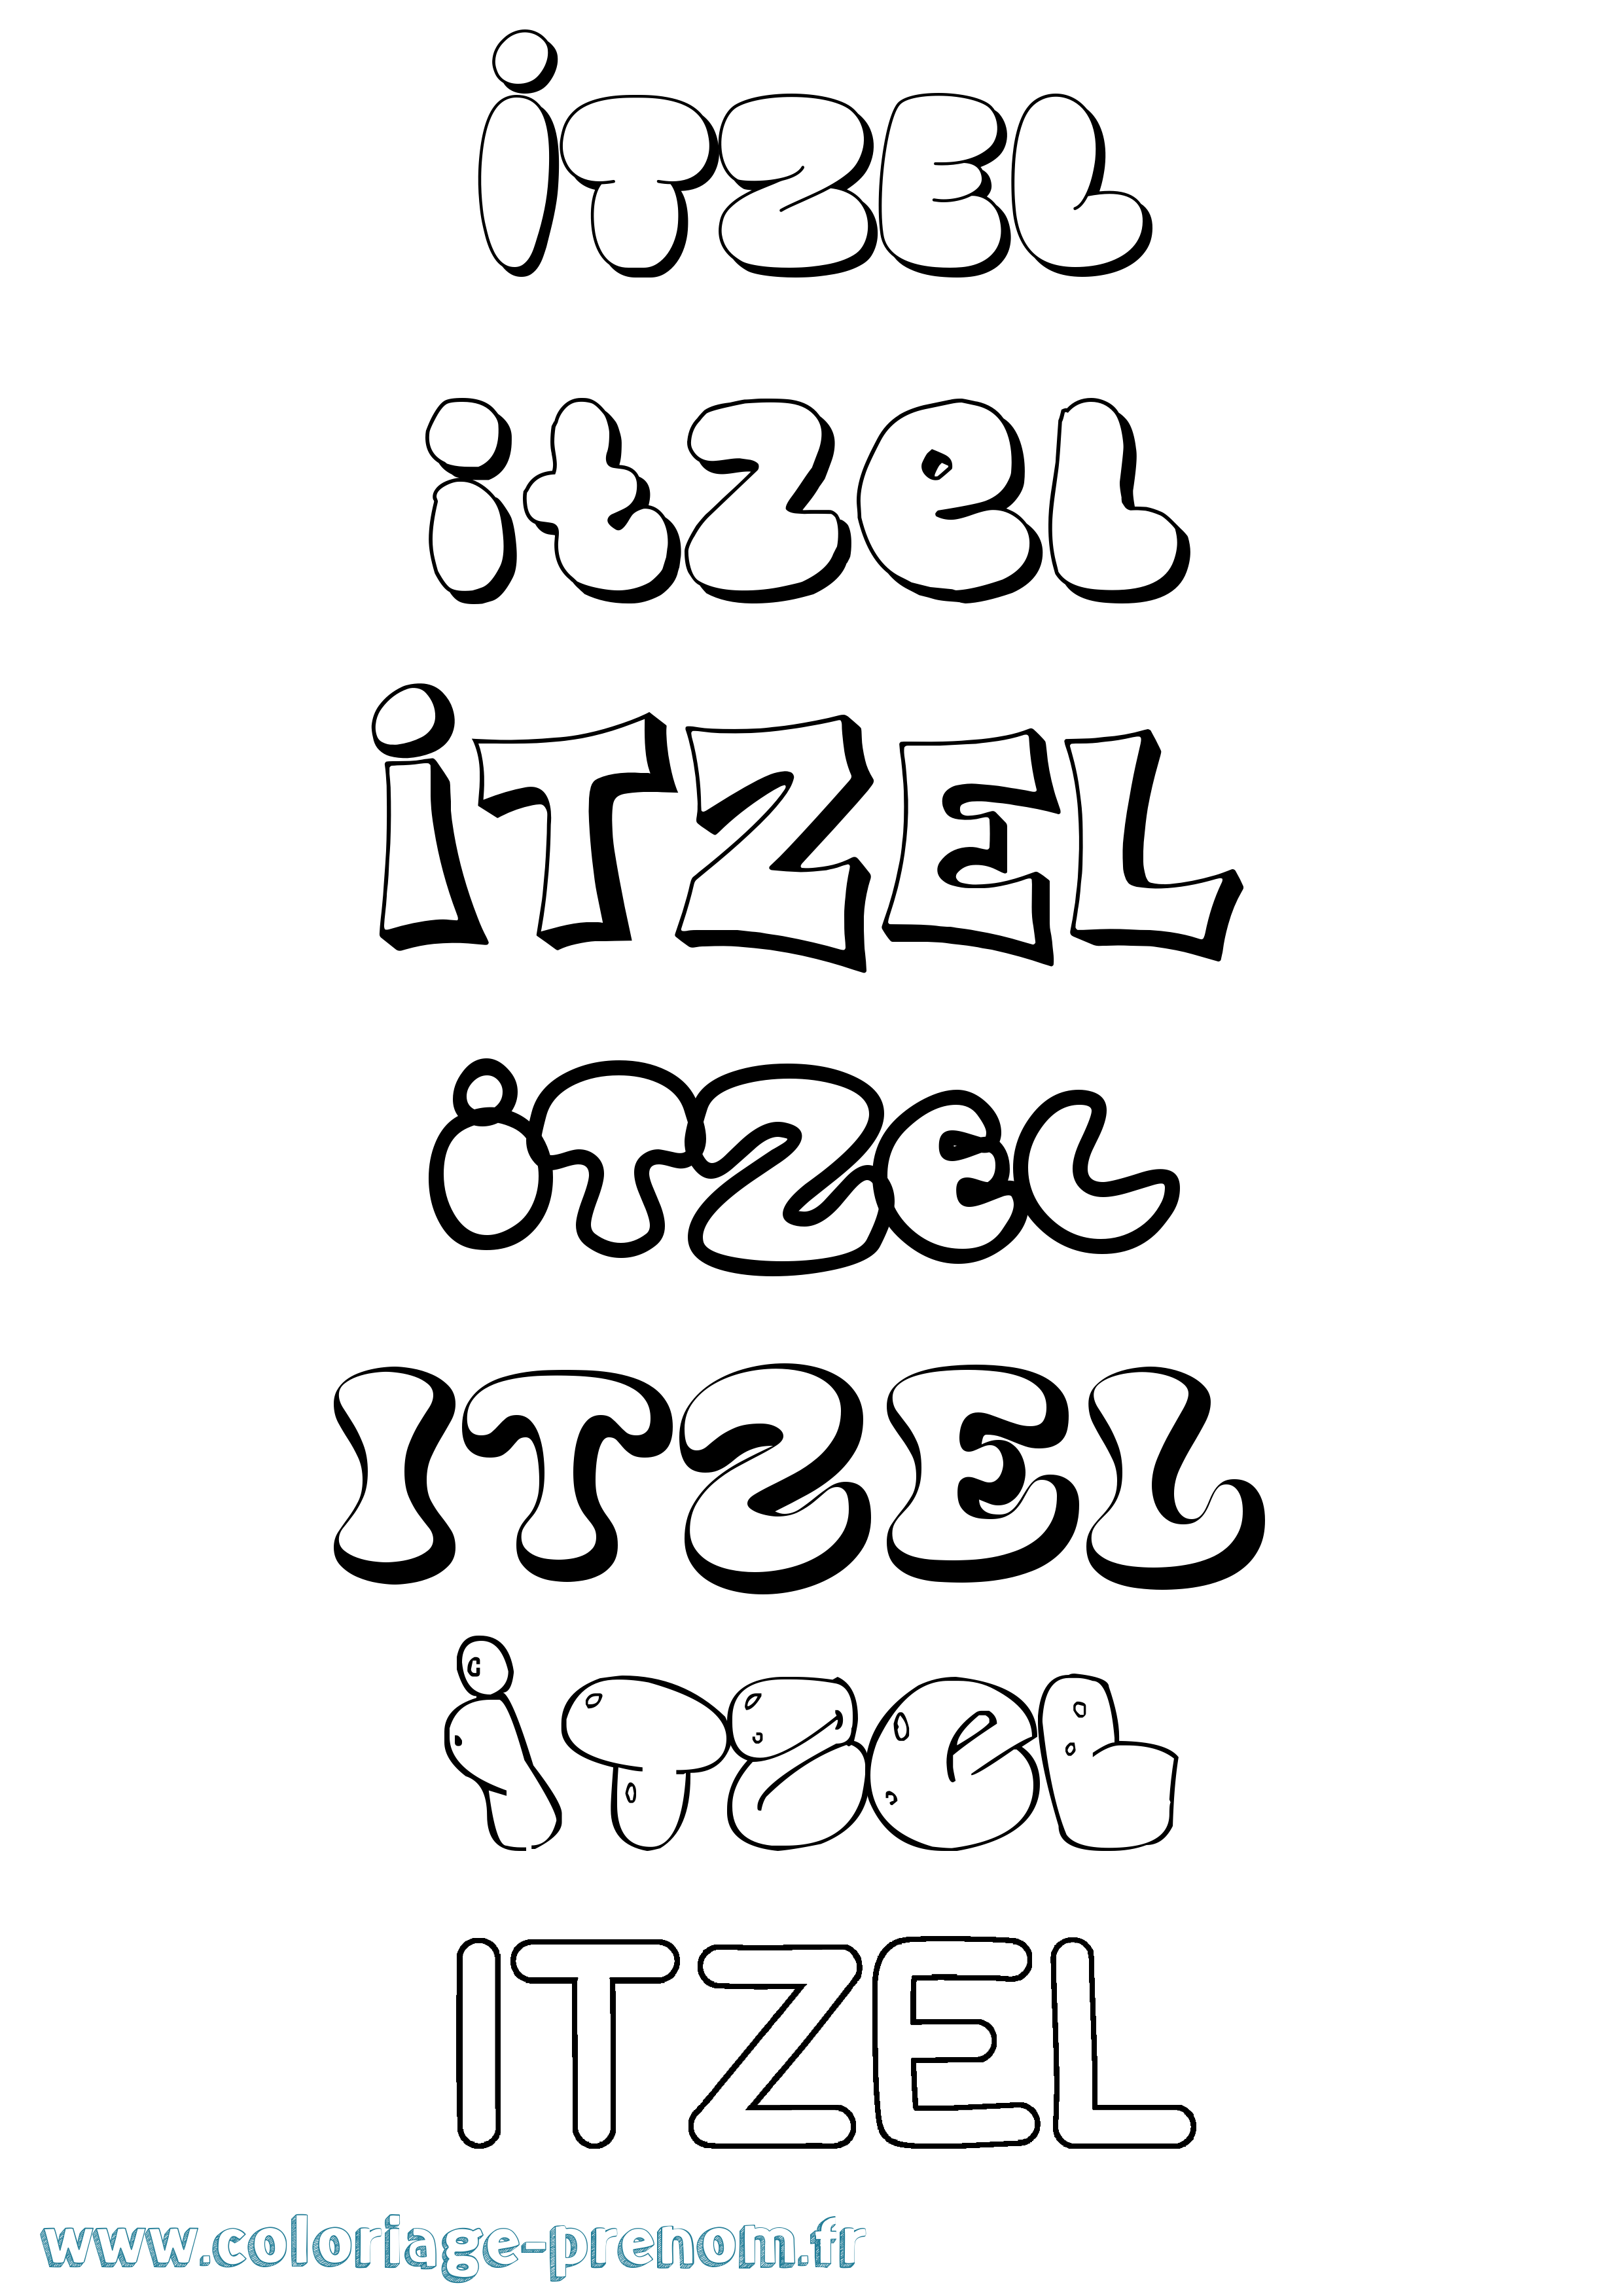 Coloriage prénom Itzel Bubble